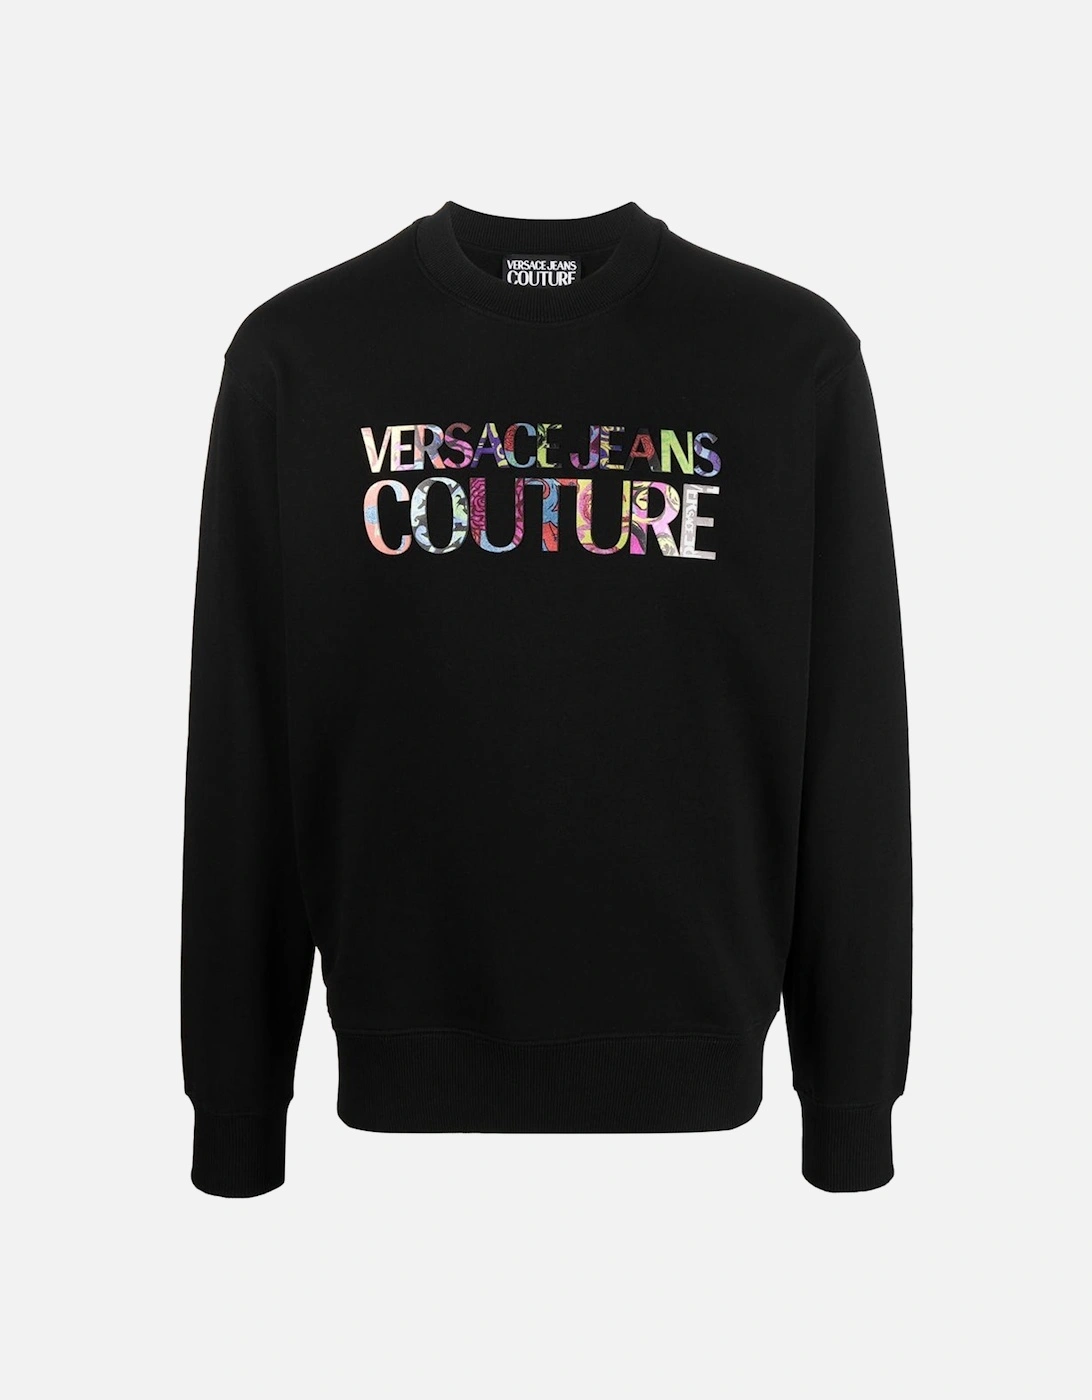 Jeans Couture Multicolour Logo Print Sweatshirt Black, 2 of 1